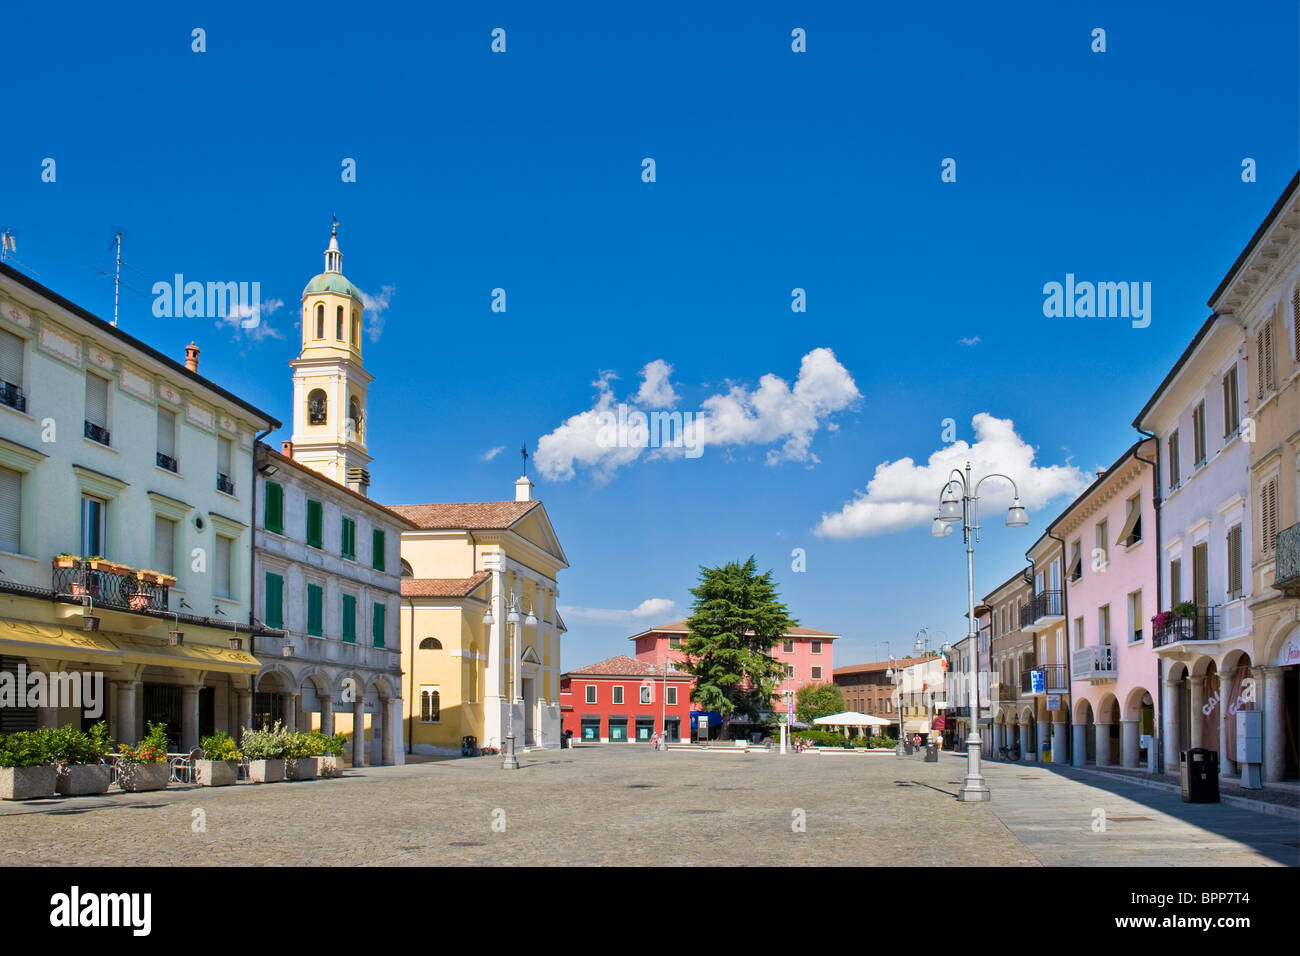 Suzzara, Mantua province, Italy Stock Photo